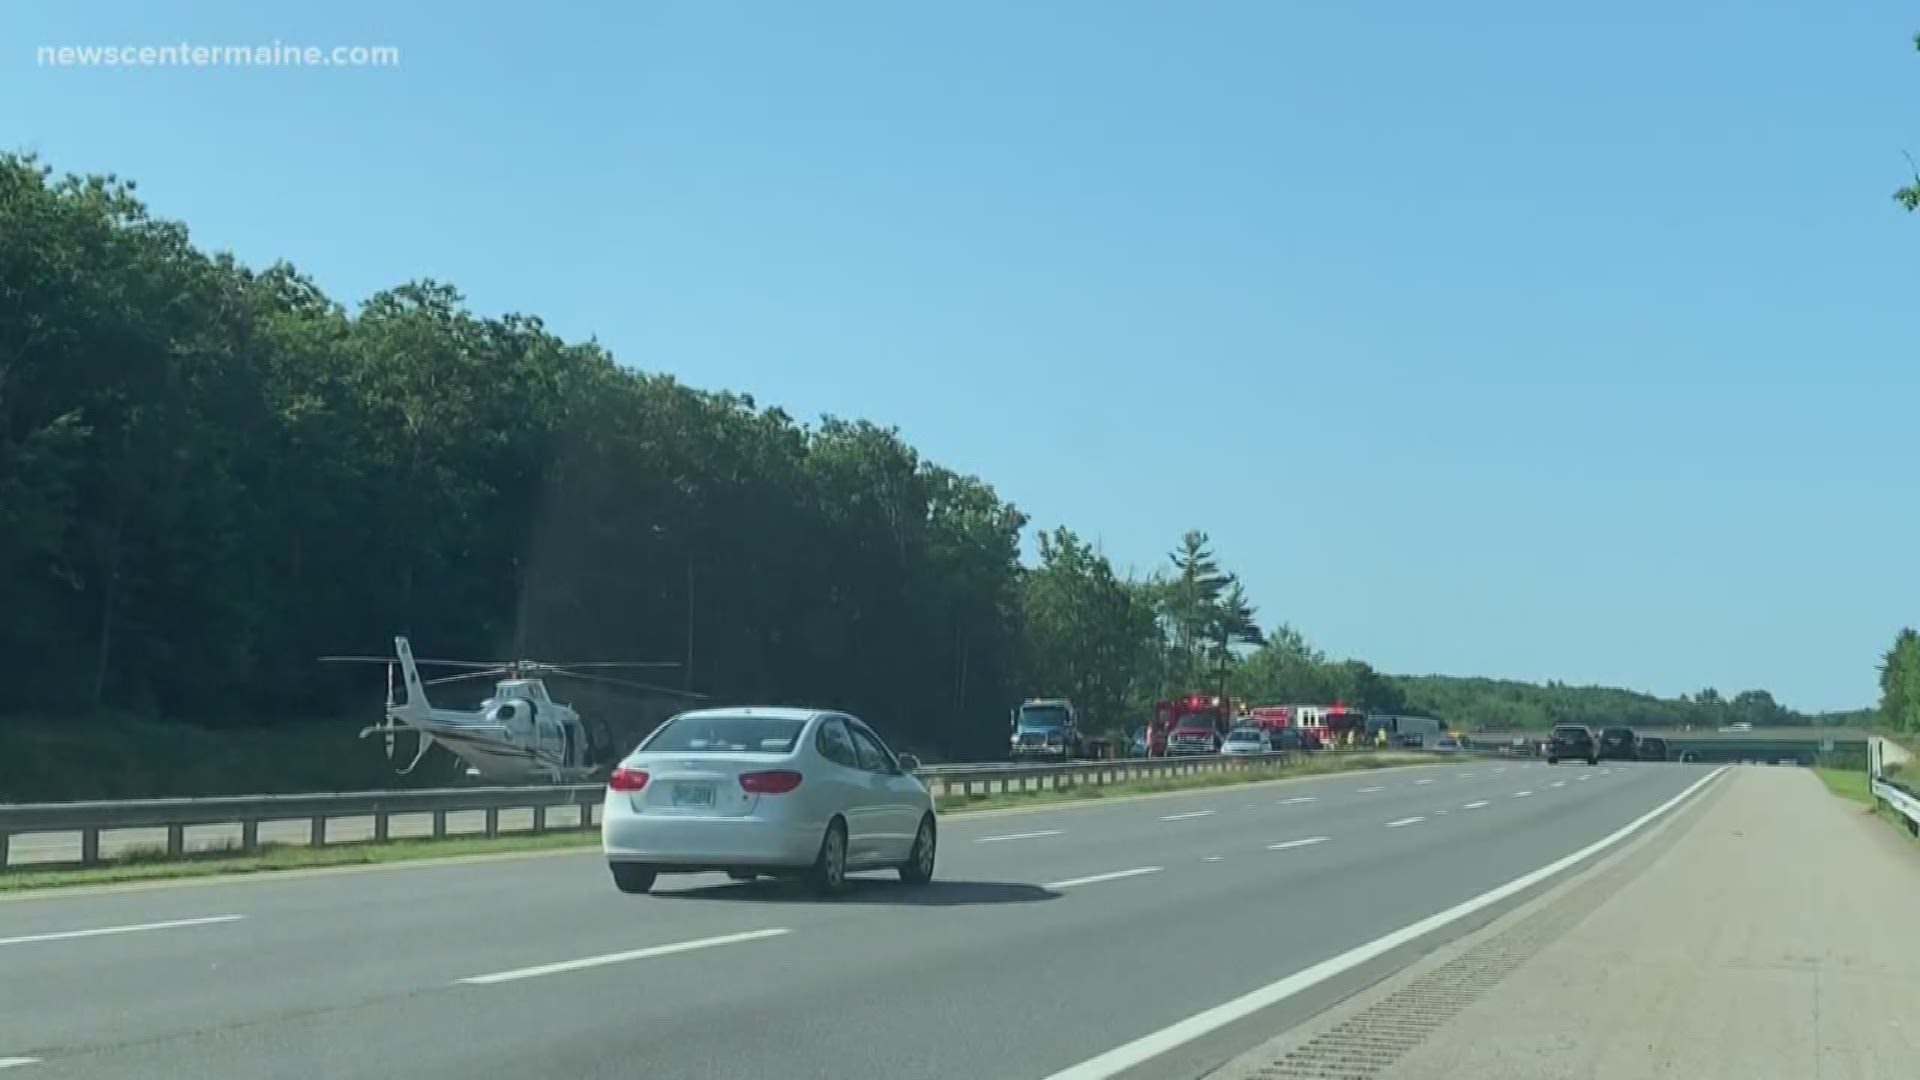 LifeFlight lands on I-95 after York crash